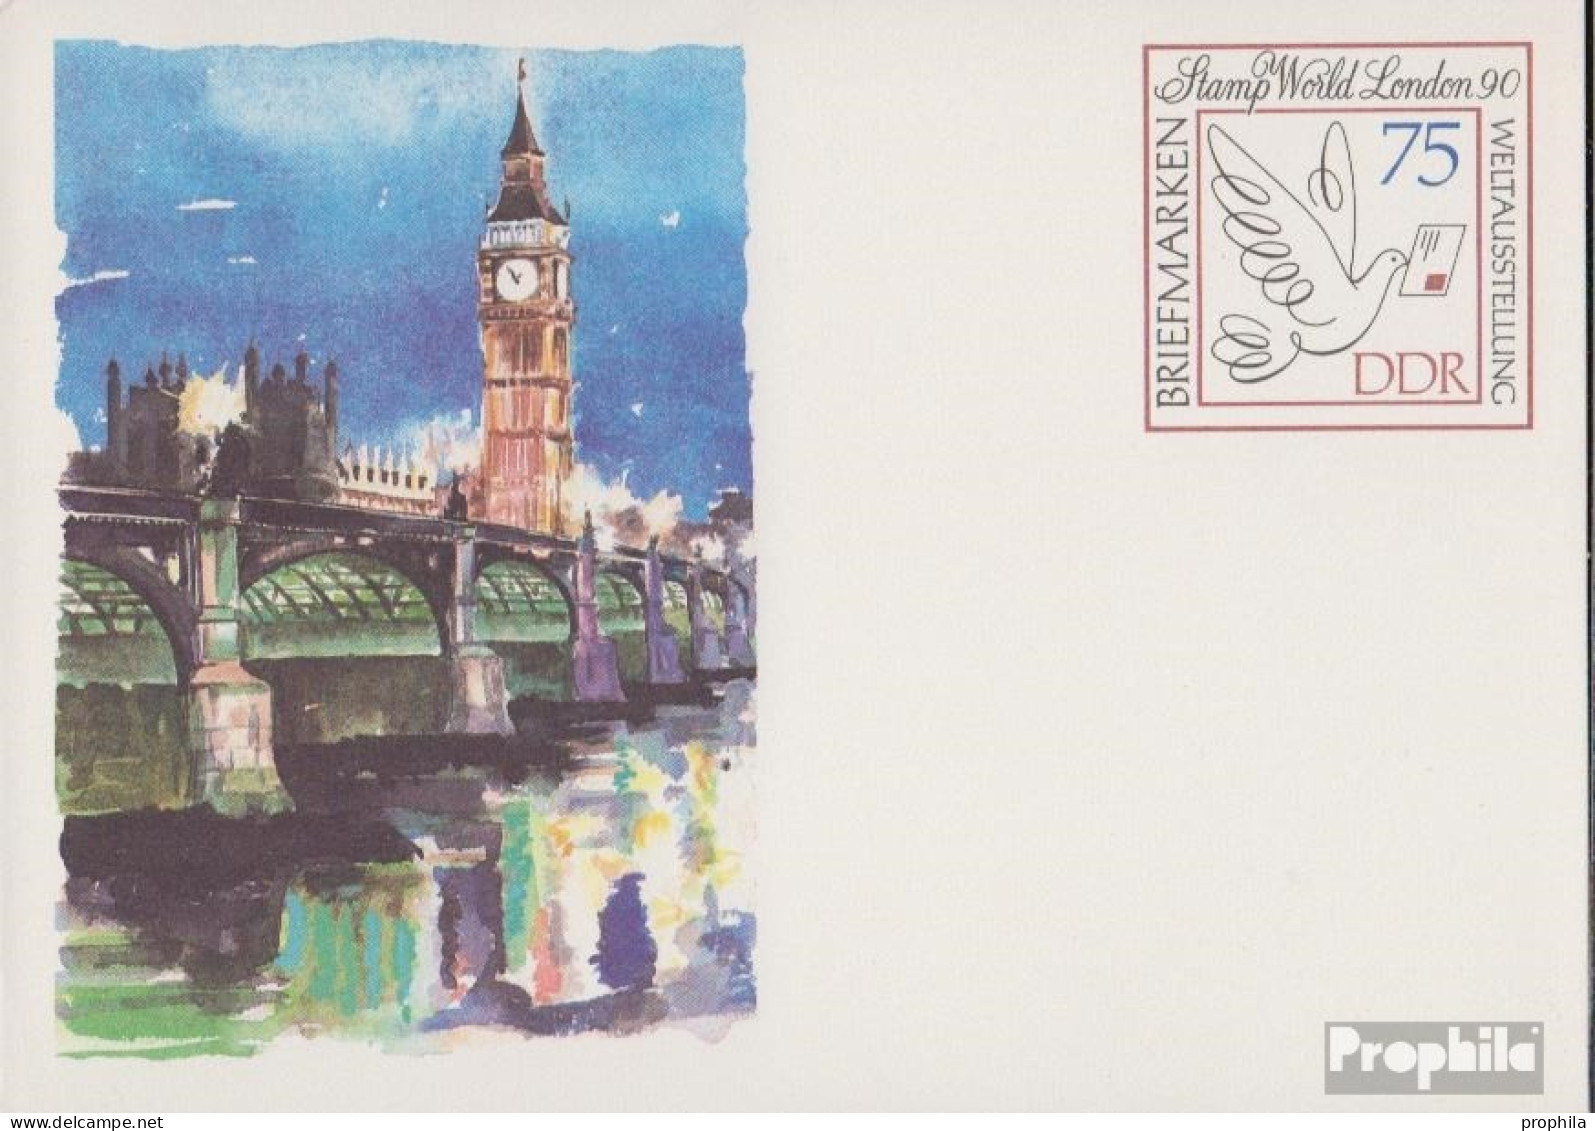 DDR P105 Amtliche Postkarte Gefälligkeitsgestempelt Gebraucht 1990 Stamp World - Postales - Usados